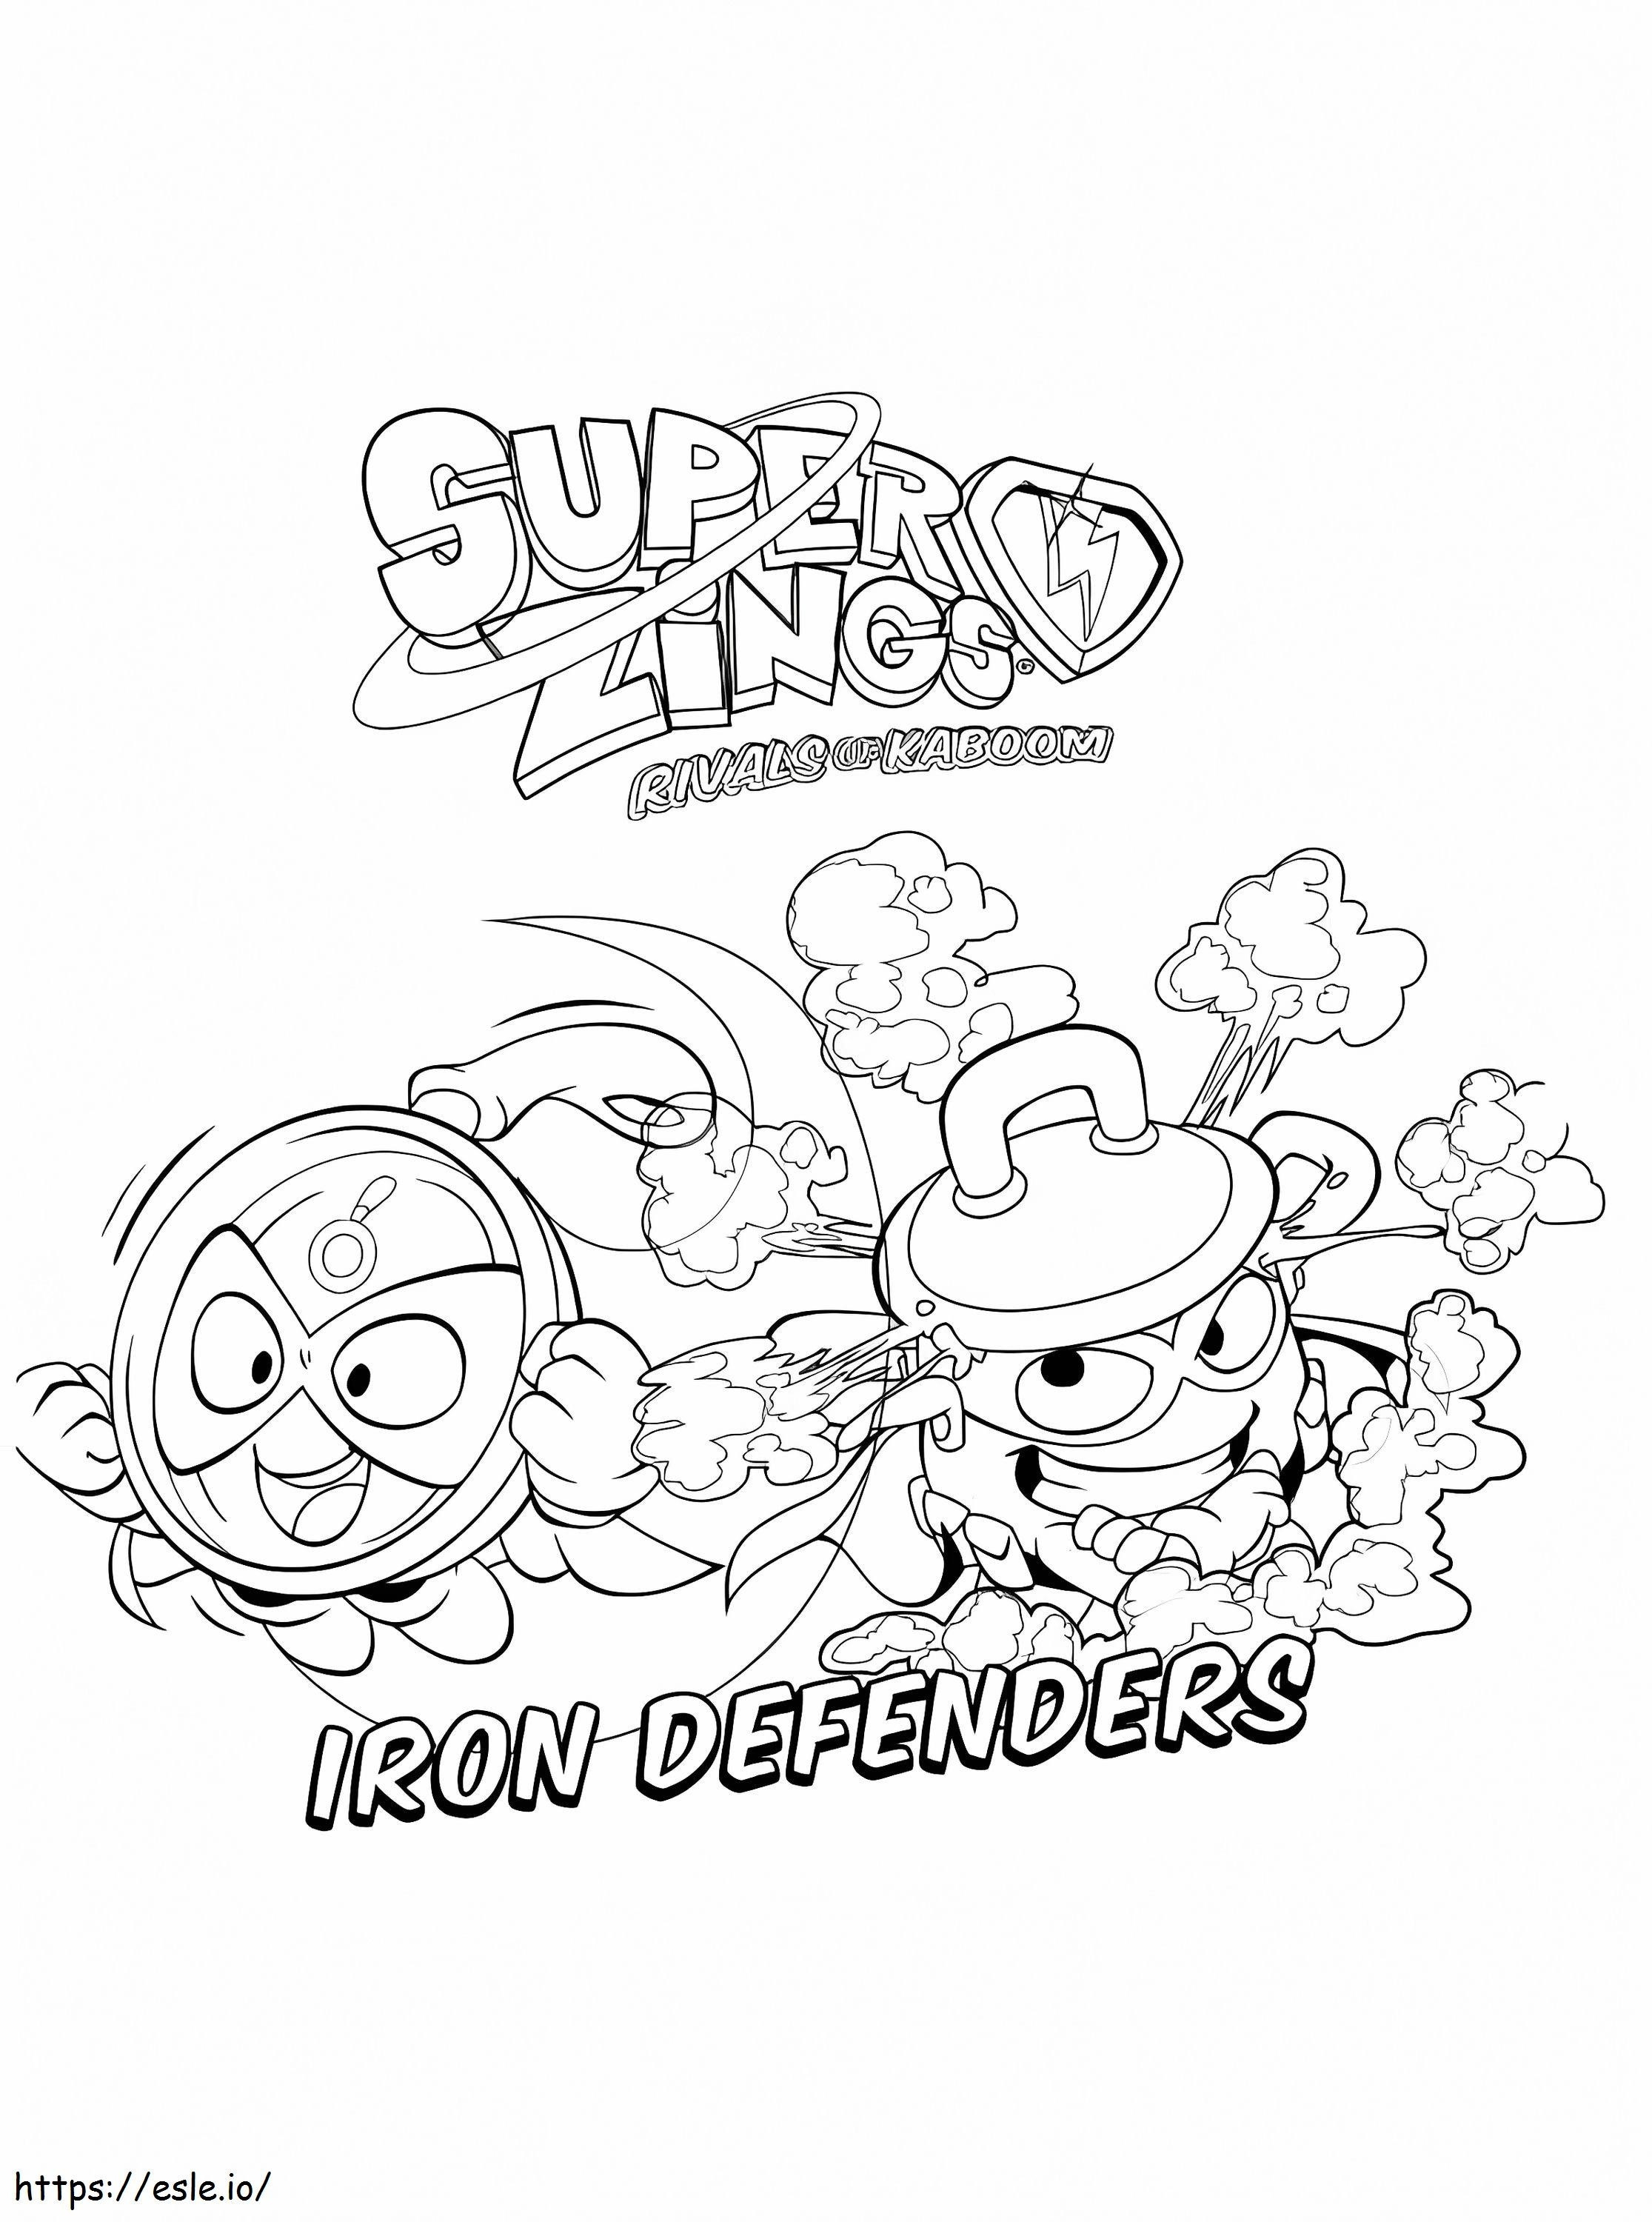 Superzings dos Defensores de Ferro para colorir